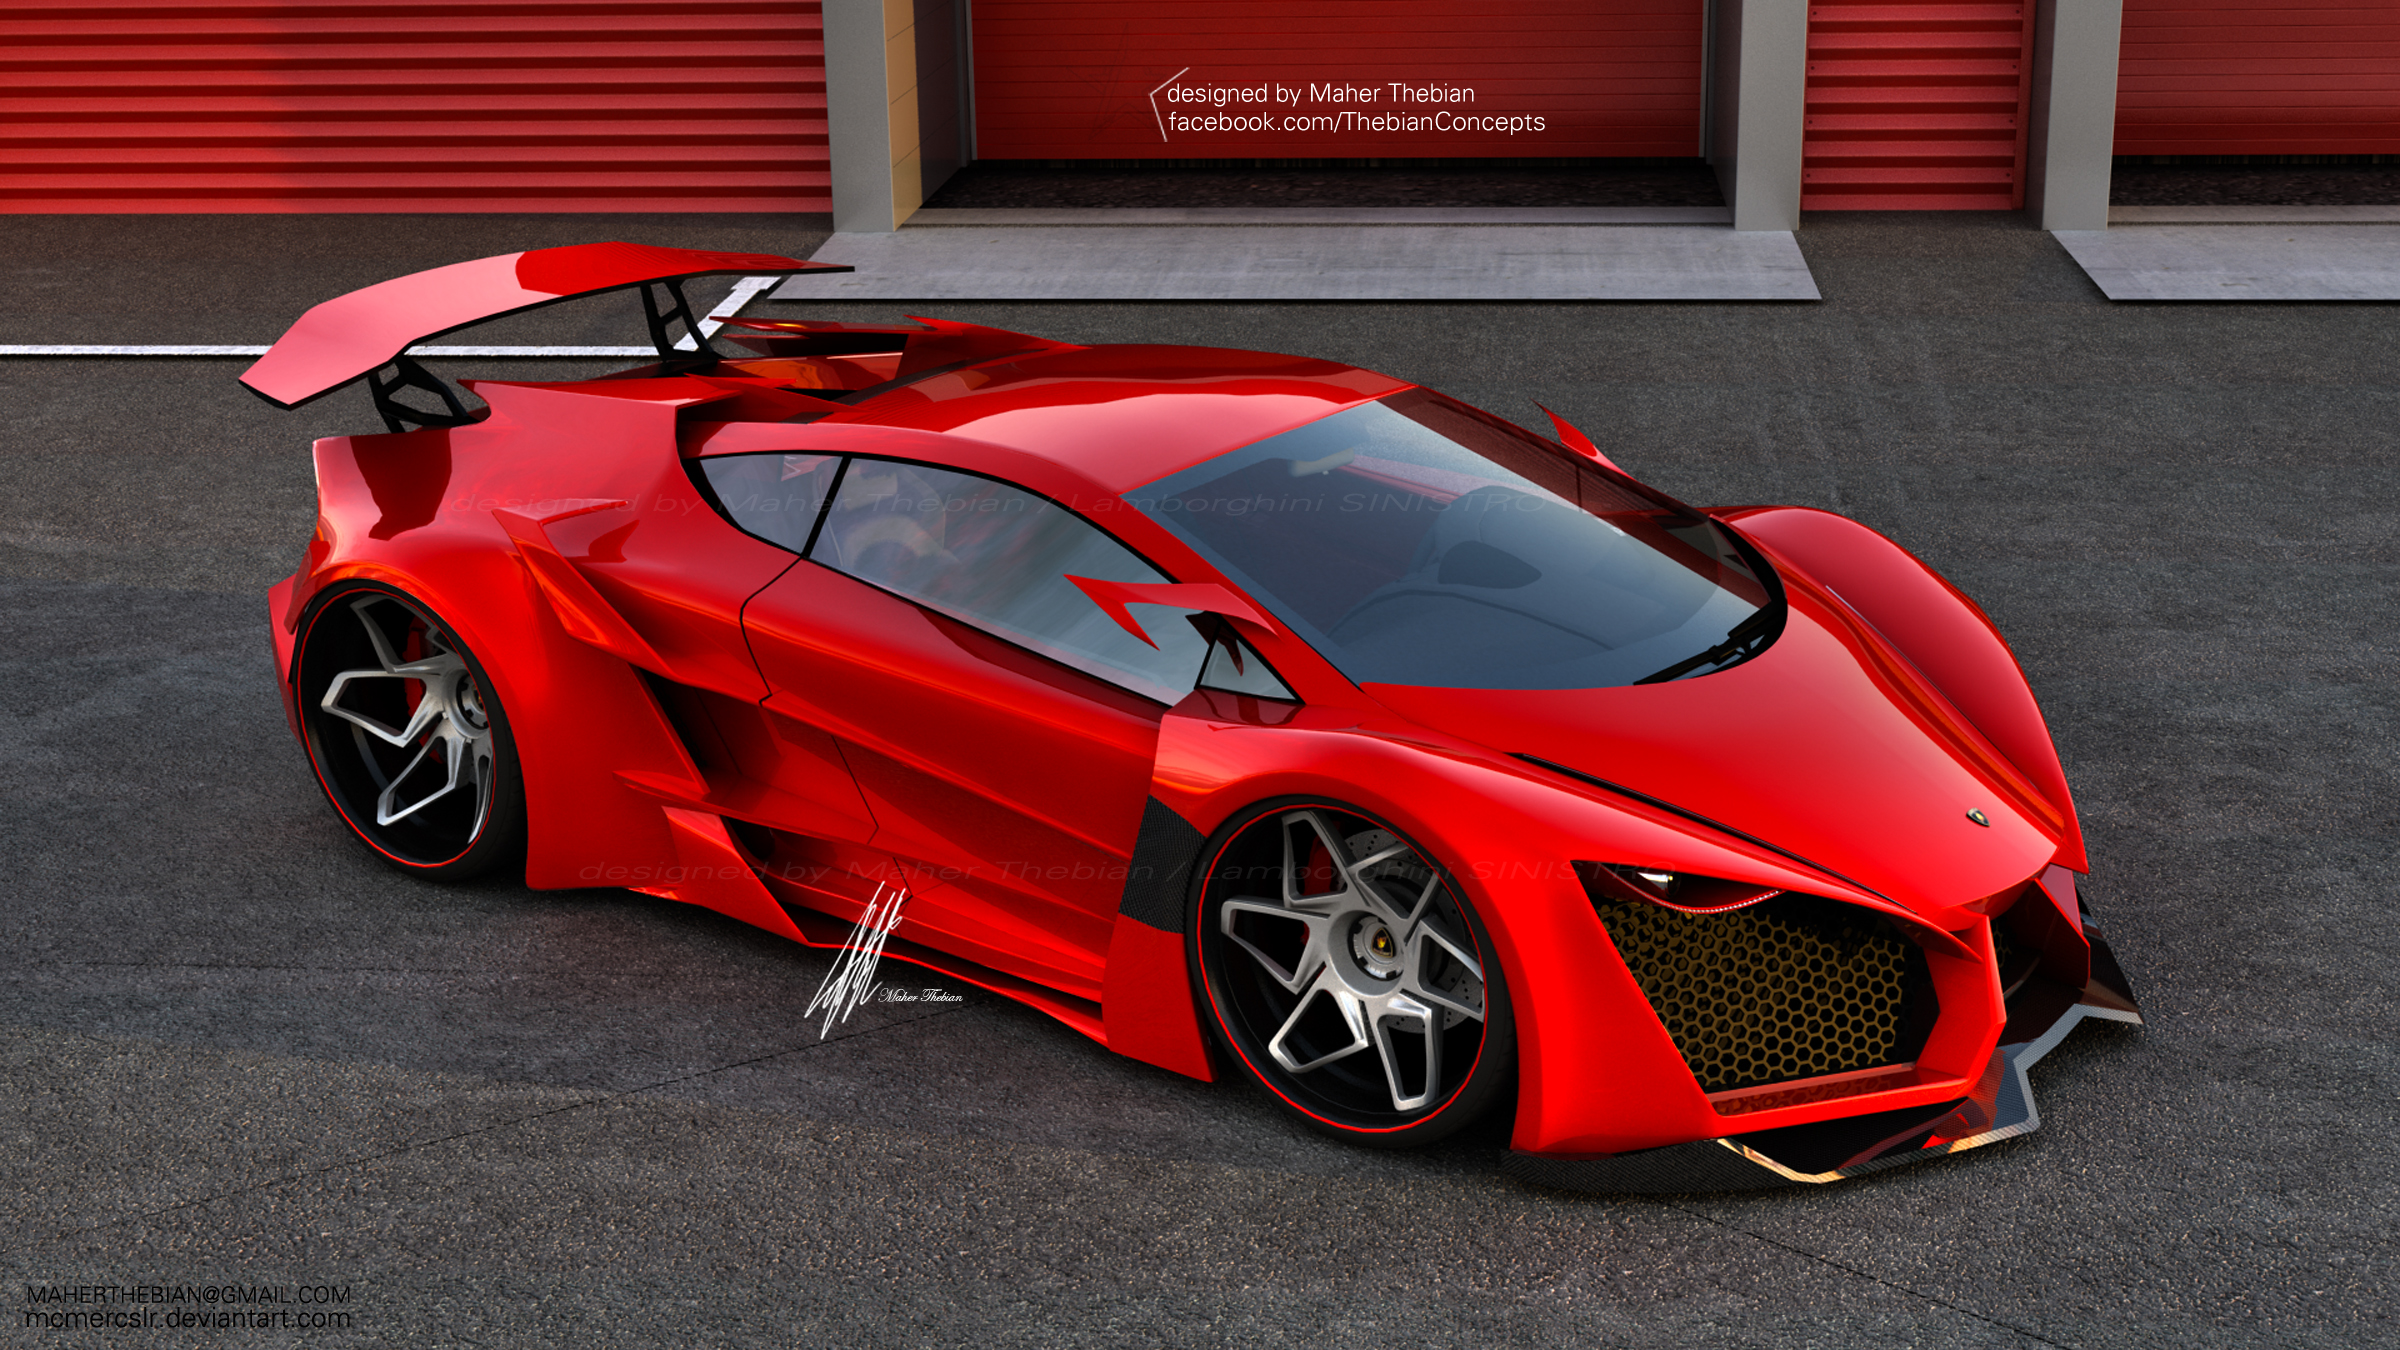 Télécharger des fonds d'écran Lamborghini Sinistro Concept HD